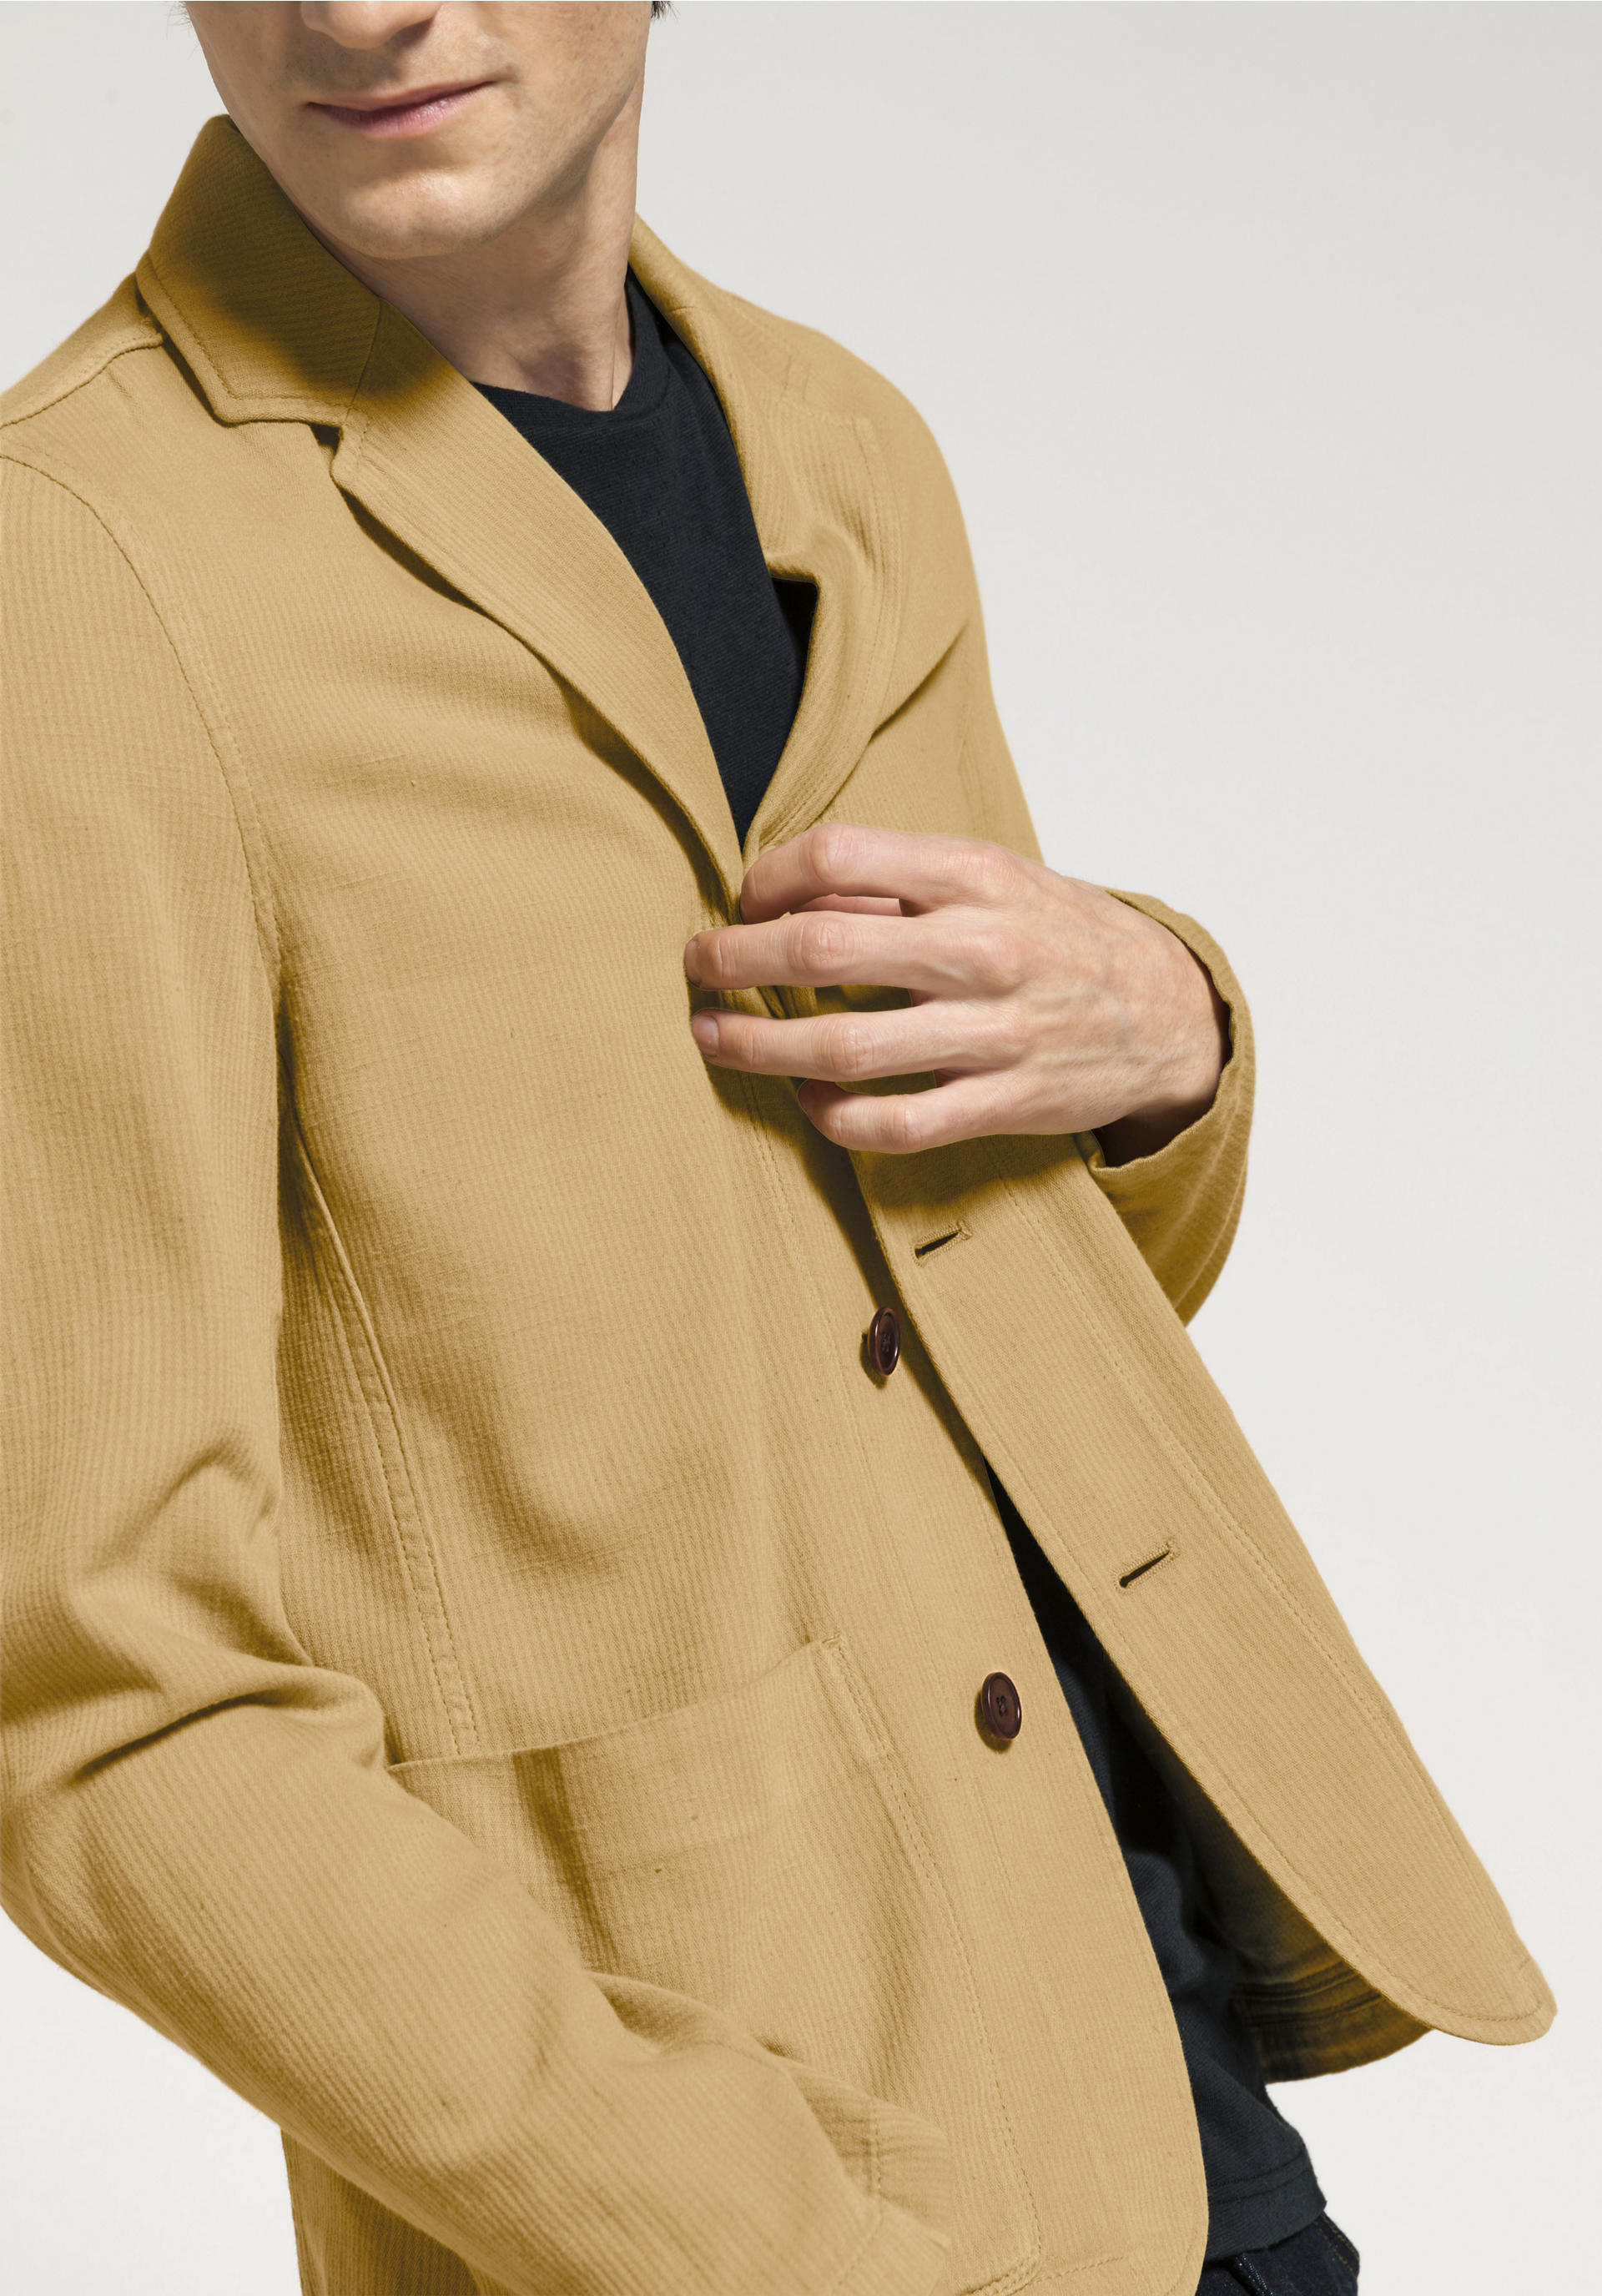 Damen Bekleidung Jacken Blazer Semicouture Leinen Jackett in Grau Sakkos und Anzugsjacken 